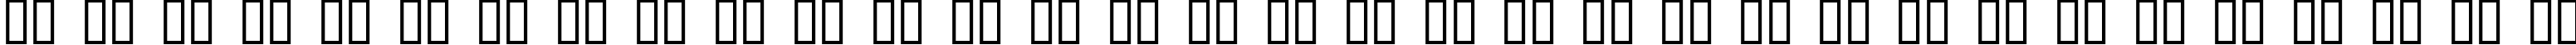 Пример написания русского алфавита шрифтом Future Sallow